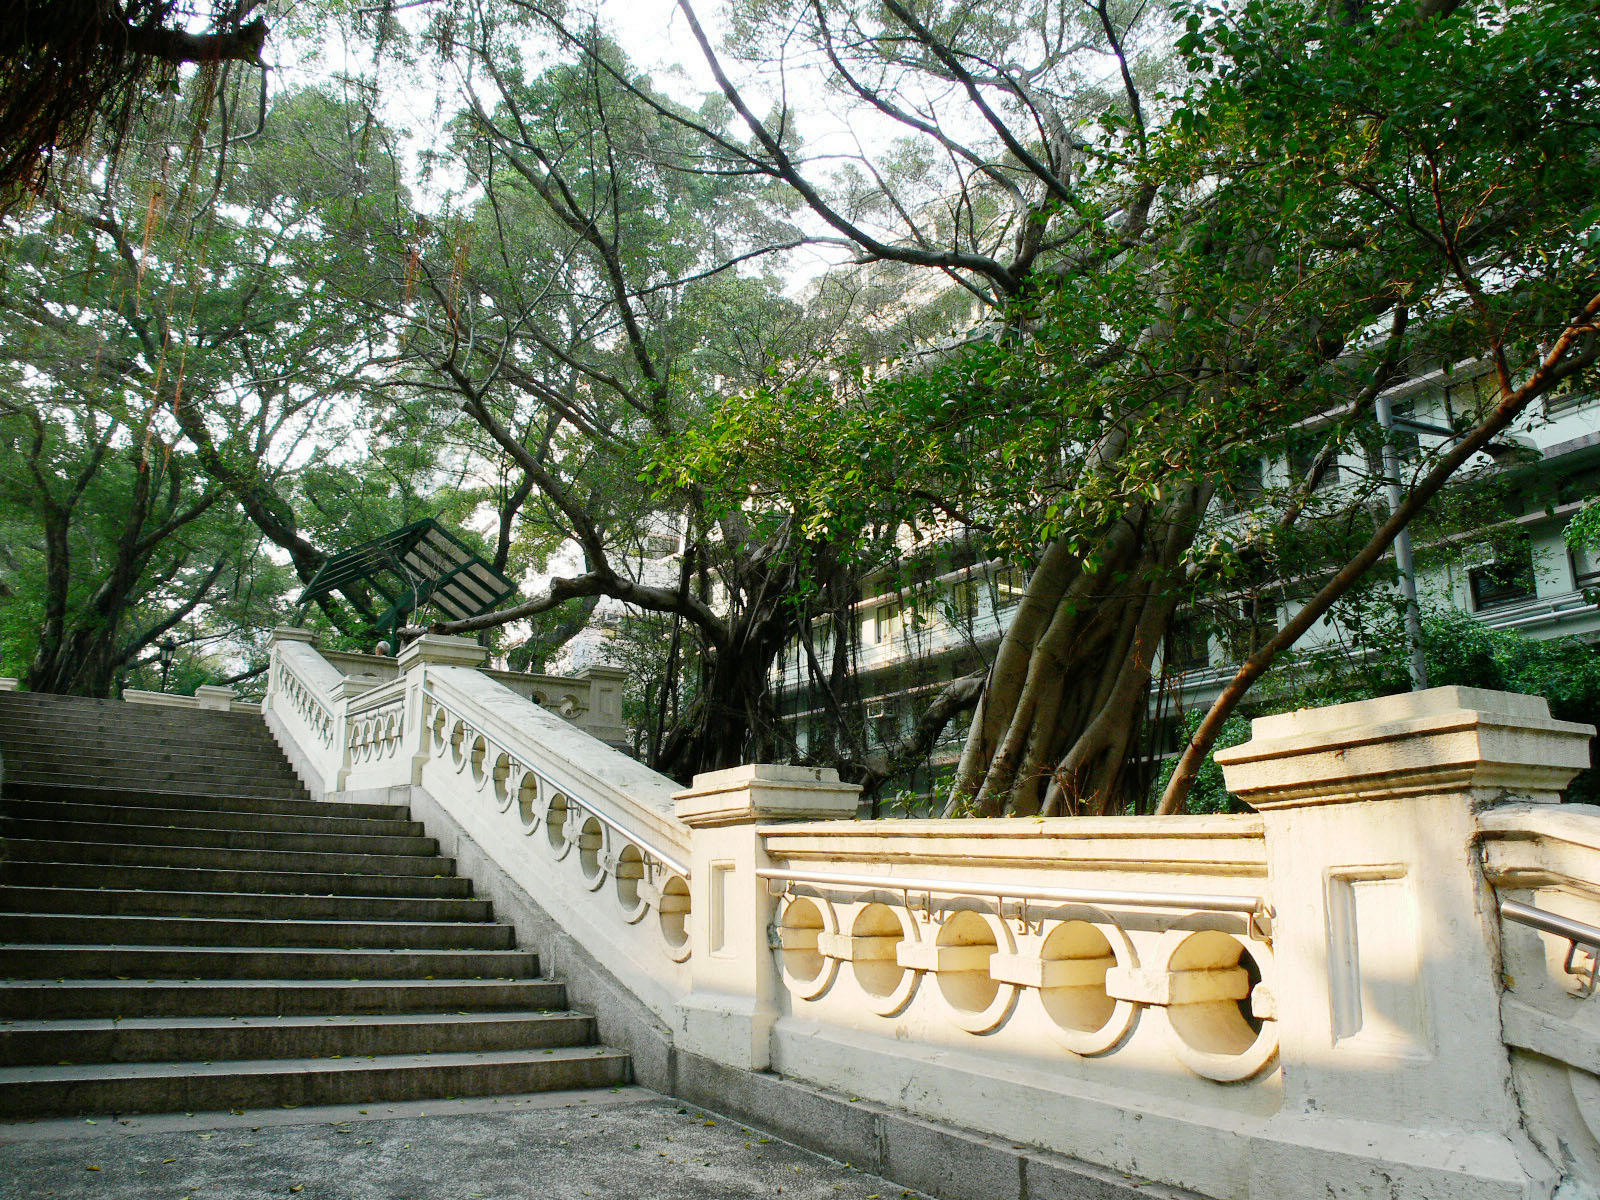 相片 6: 香港佐治五世紀念公園